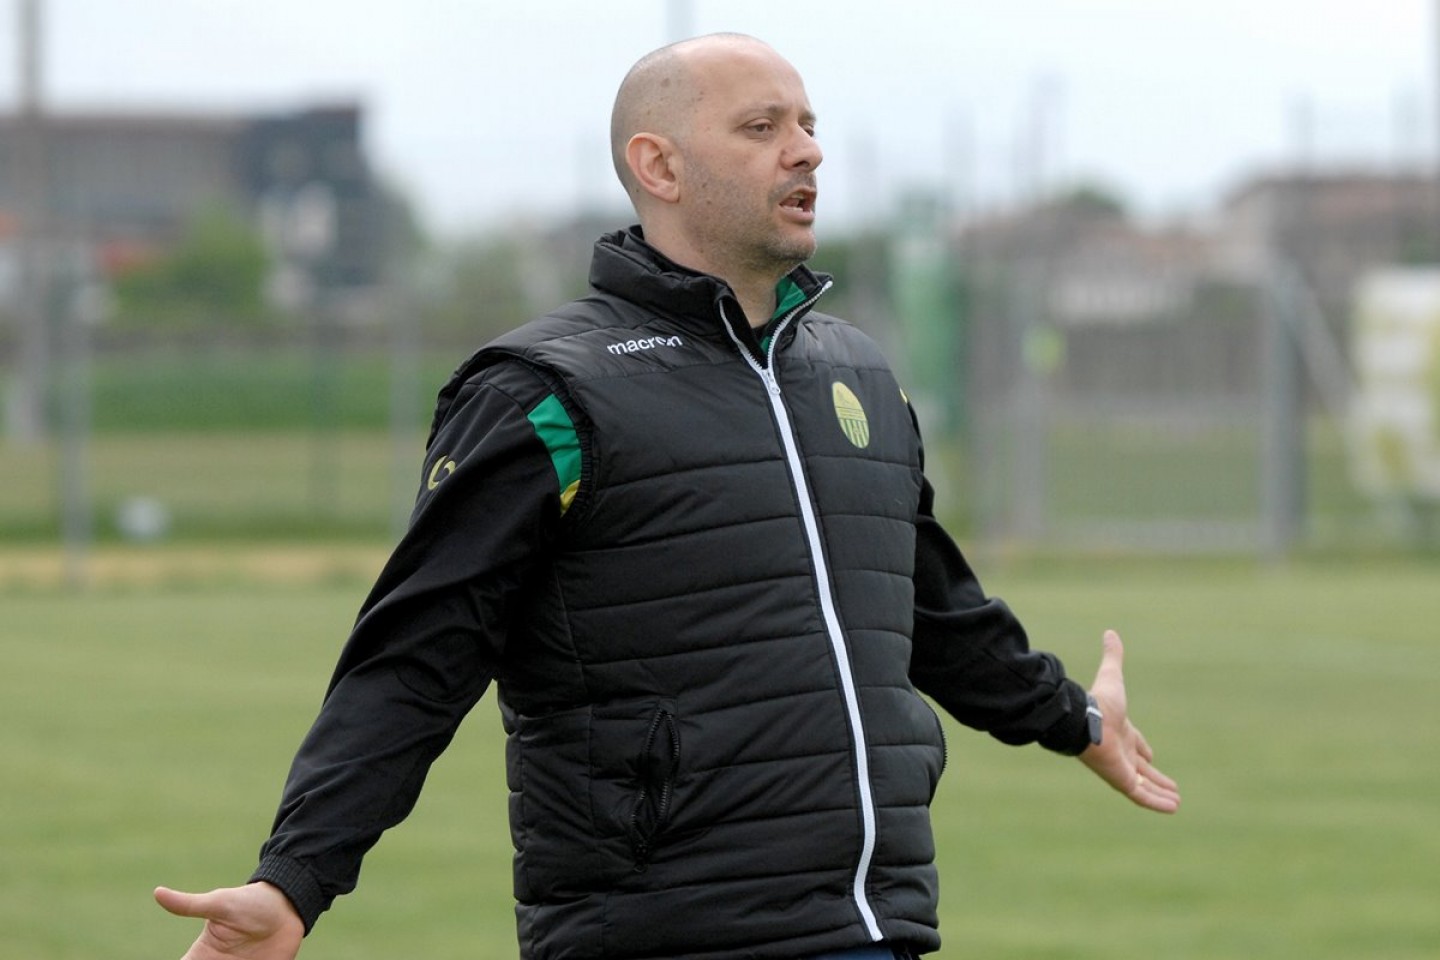 Luigi Possente è il nuovo allenatore del Garda, sostituisce Cristofaletti